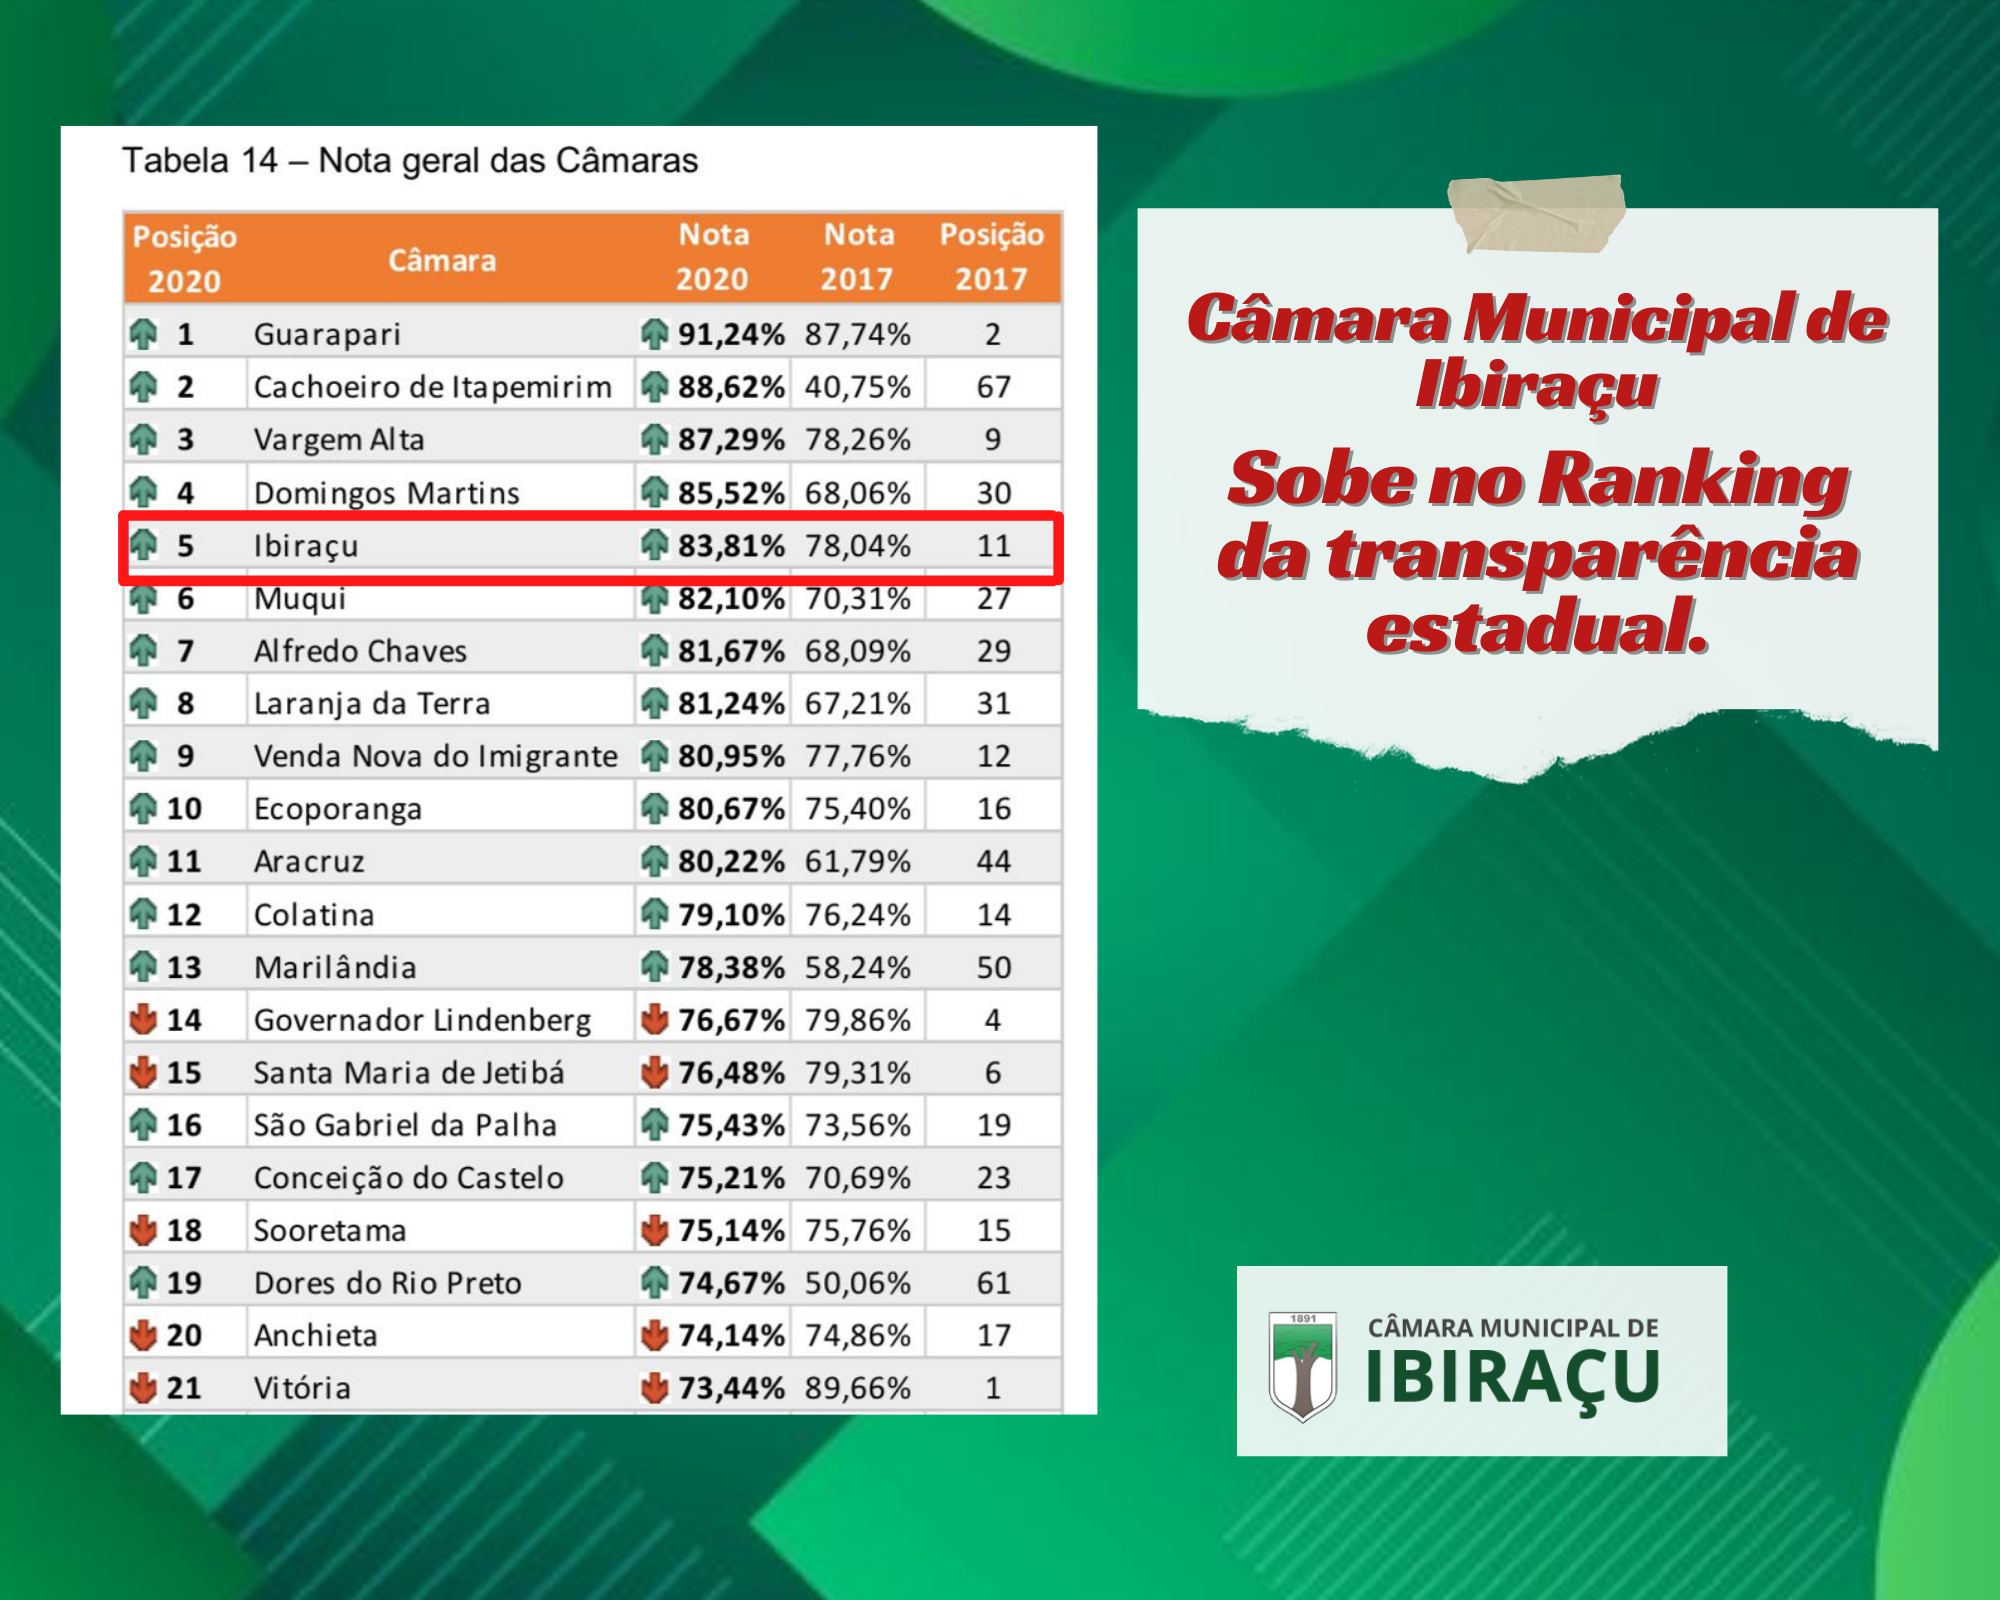 Câmara Municipal de Ibiraçu sobe no ranking da transparência estatual.